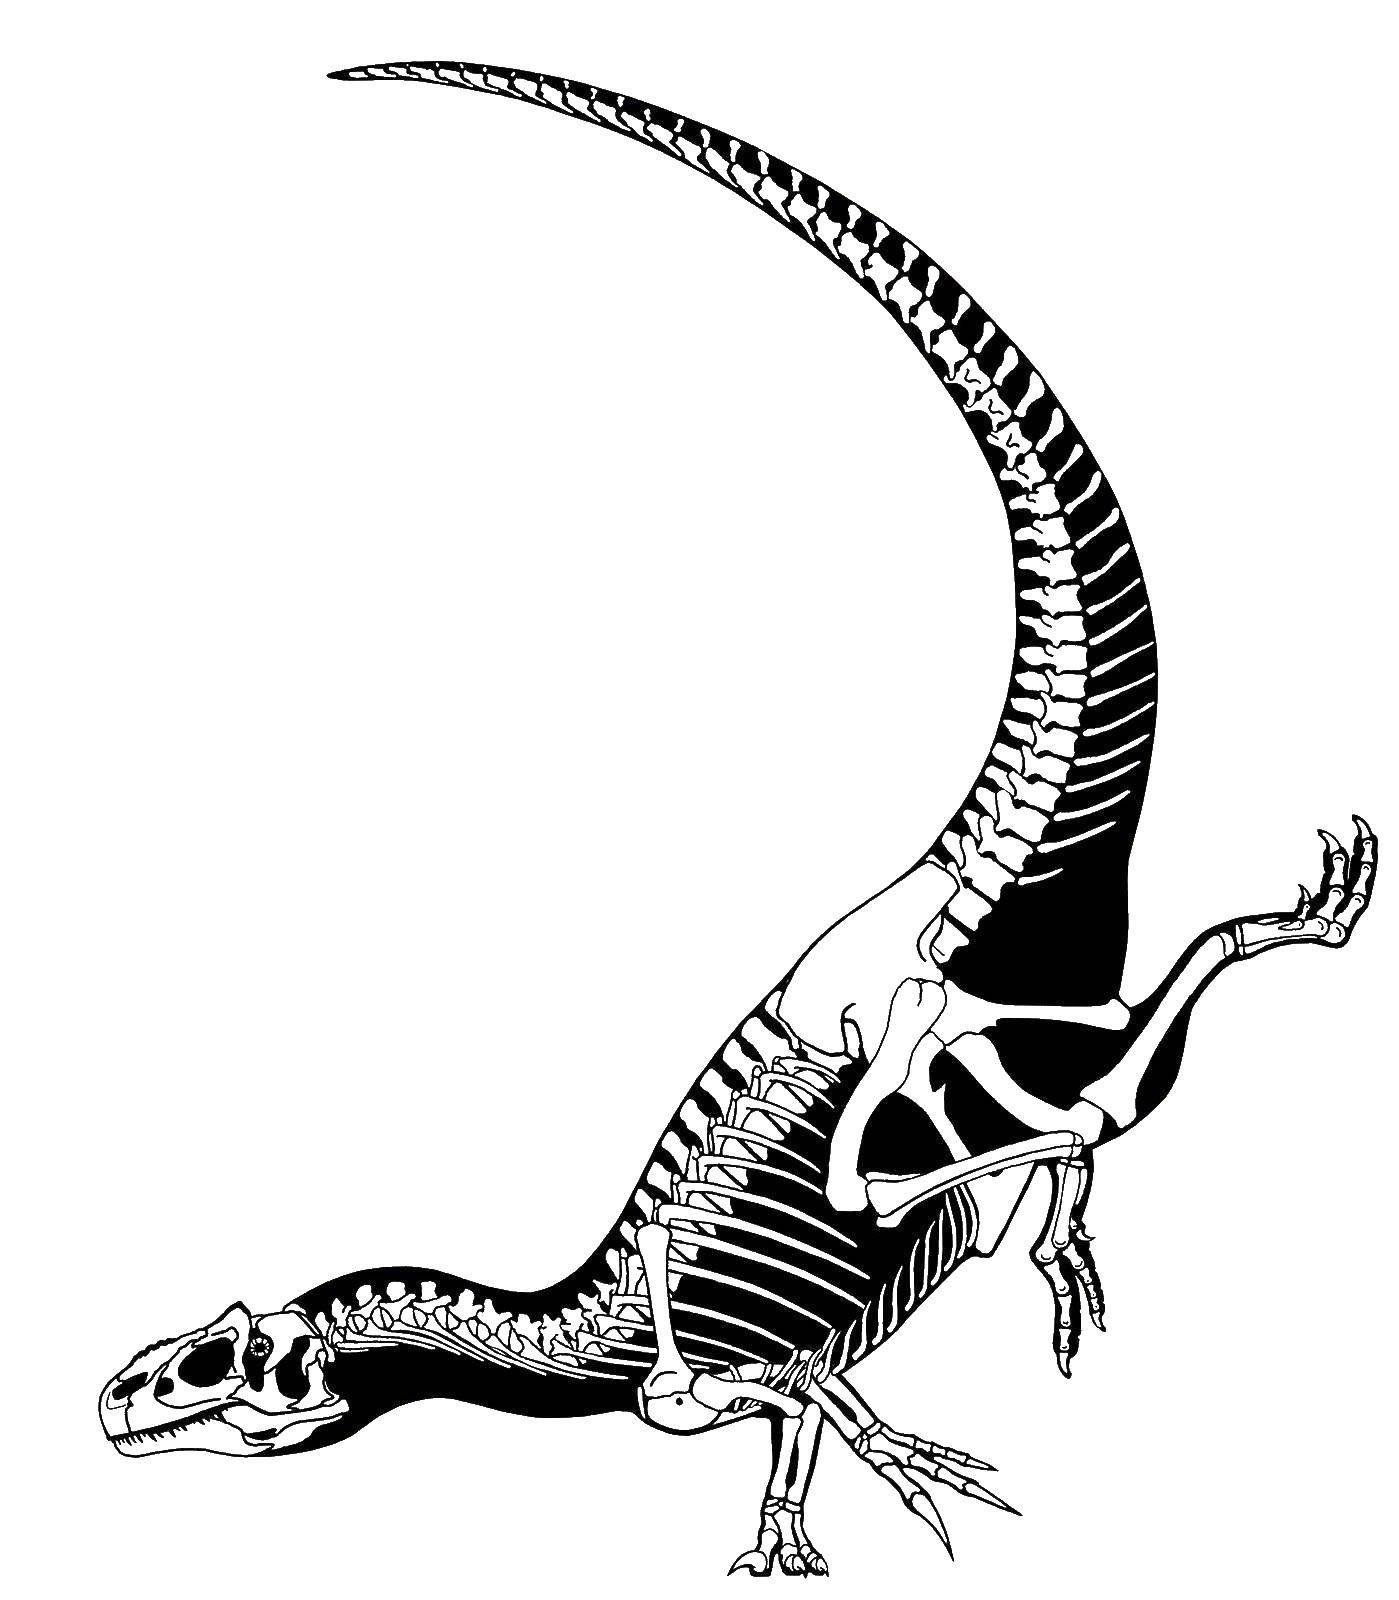 Coloring Dinosaur skeleton. Category dinosaur. Tags:  skeleton, dinosaur.